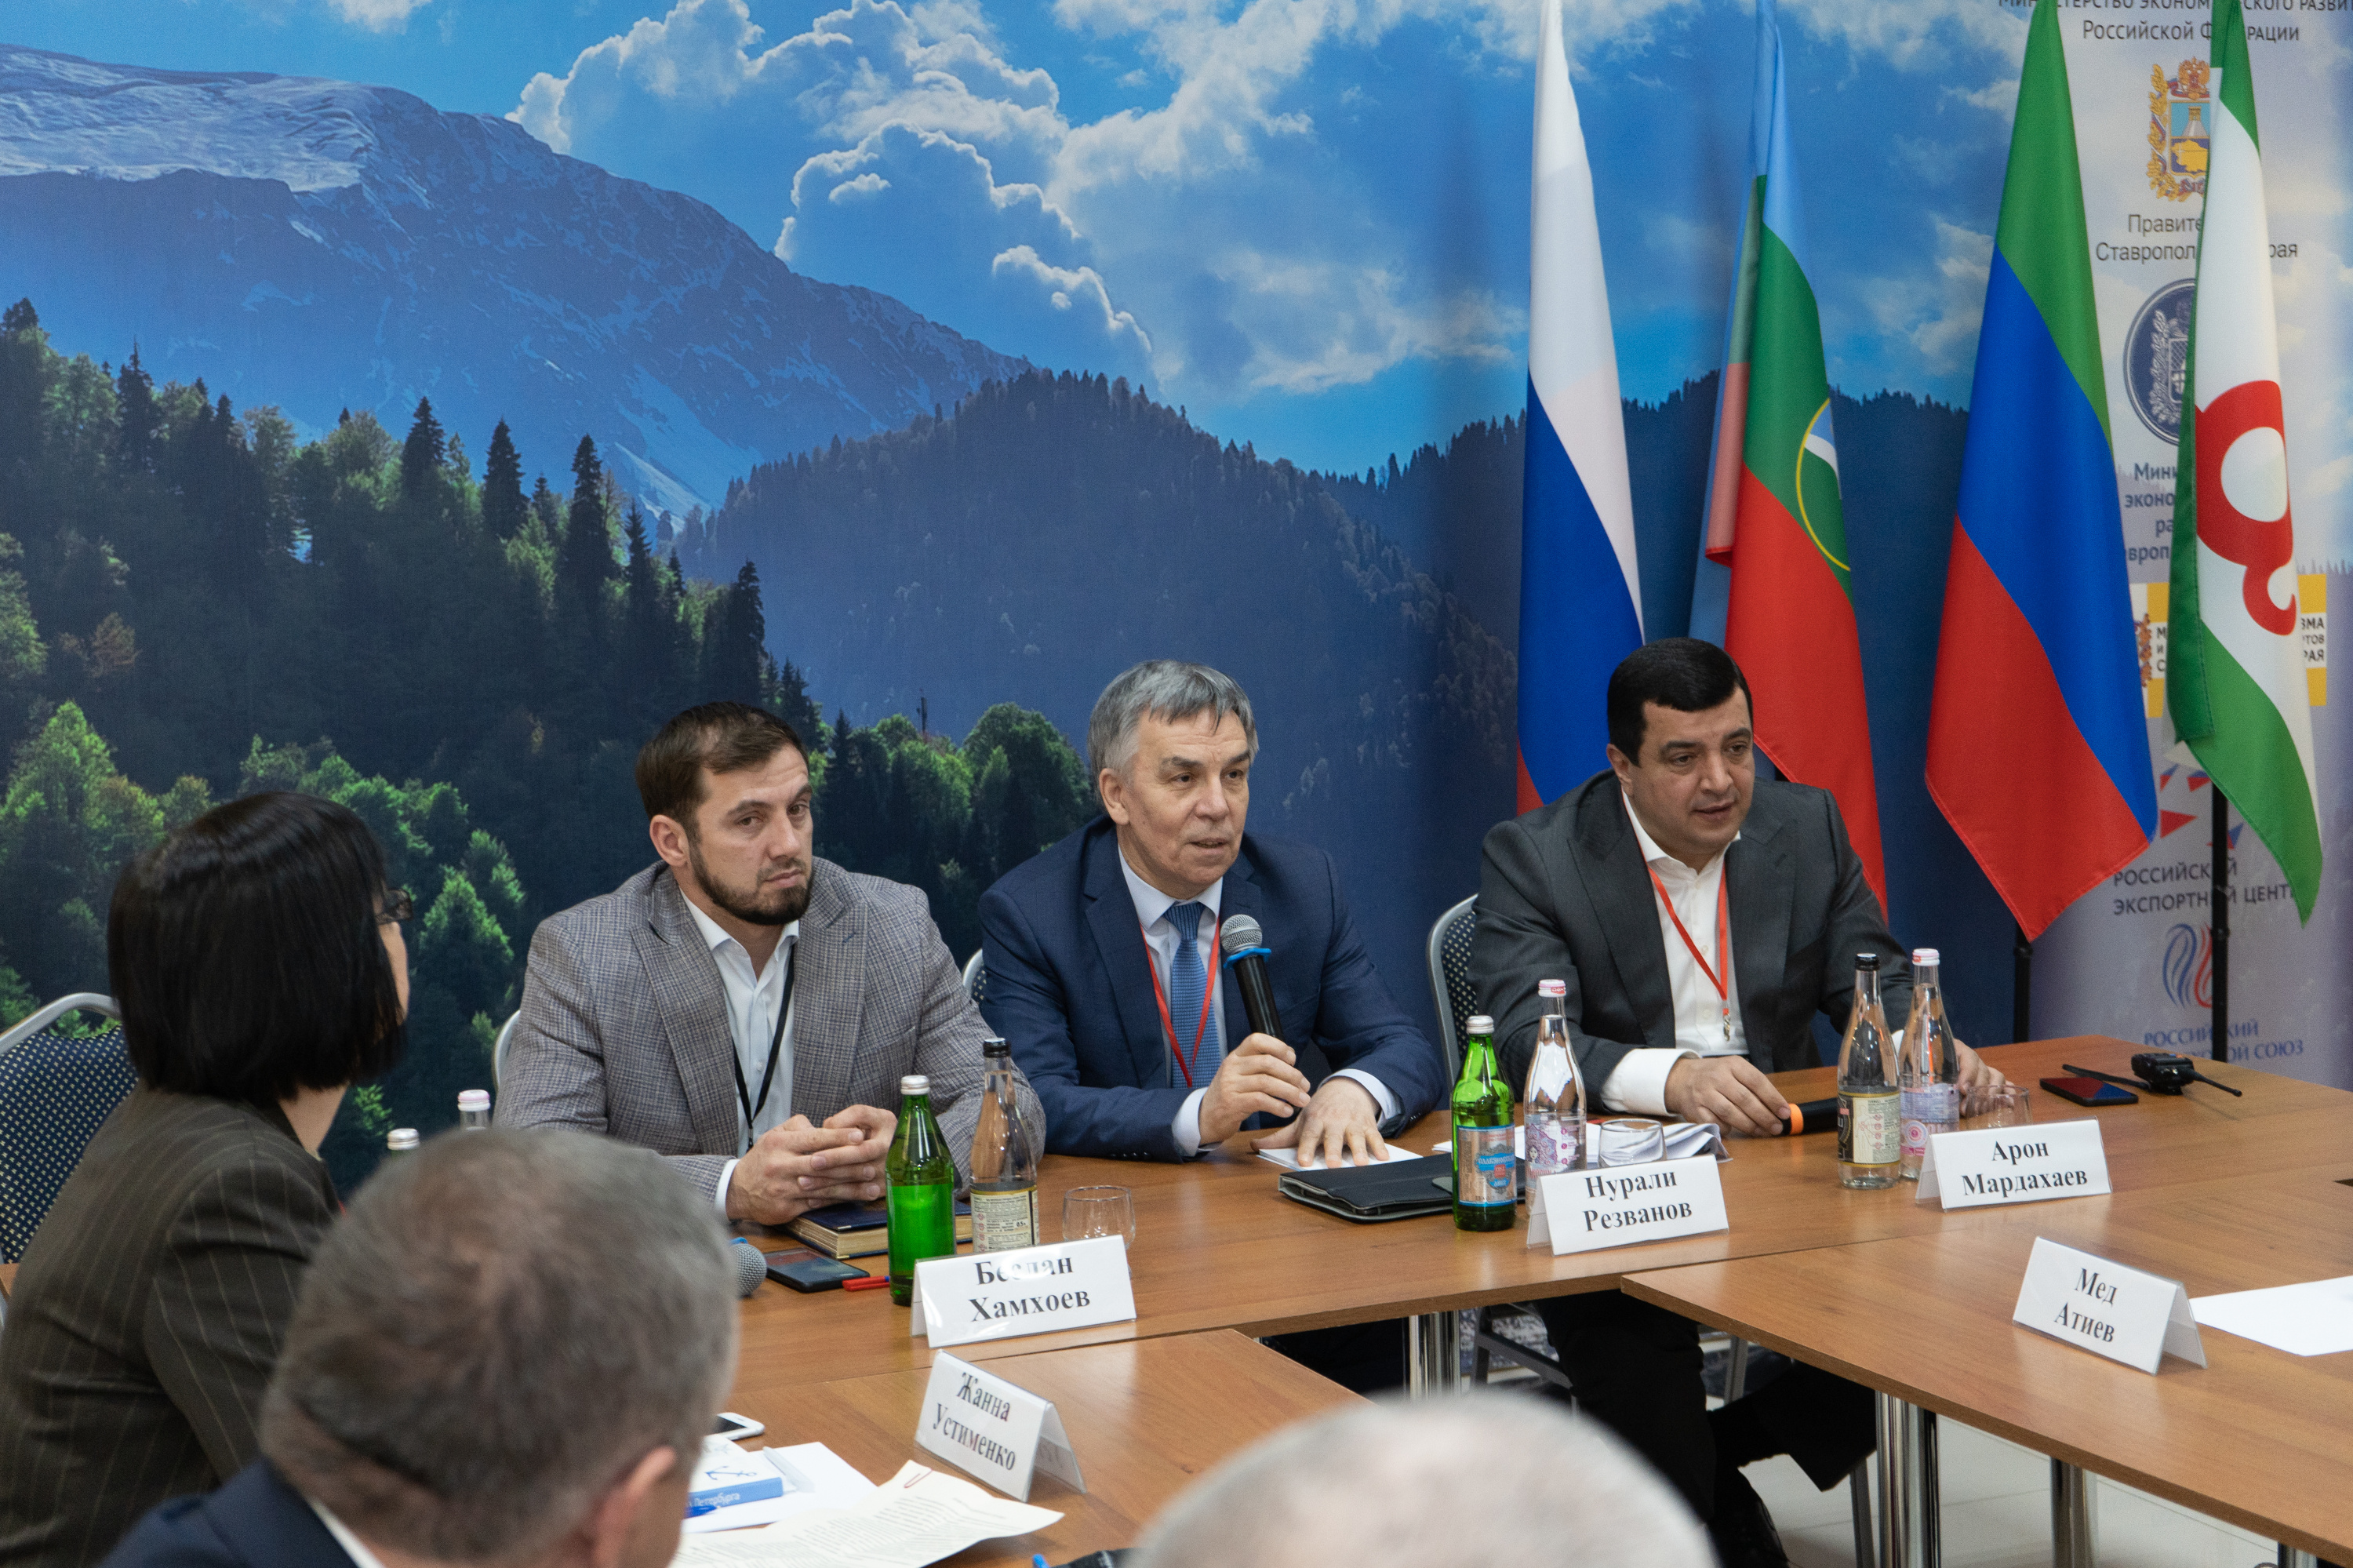 Арон Мардахаев, министры и эксперты по закупкам обсудили актуальные вопросы в рамках деловой программы